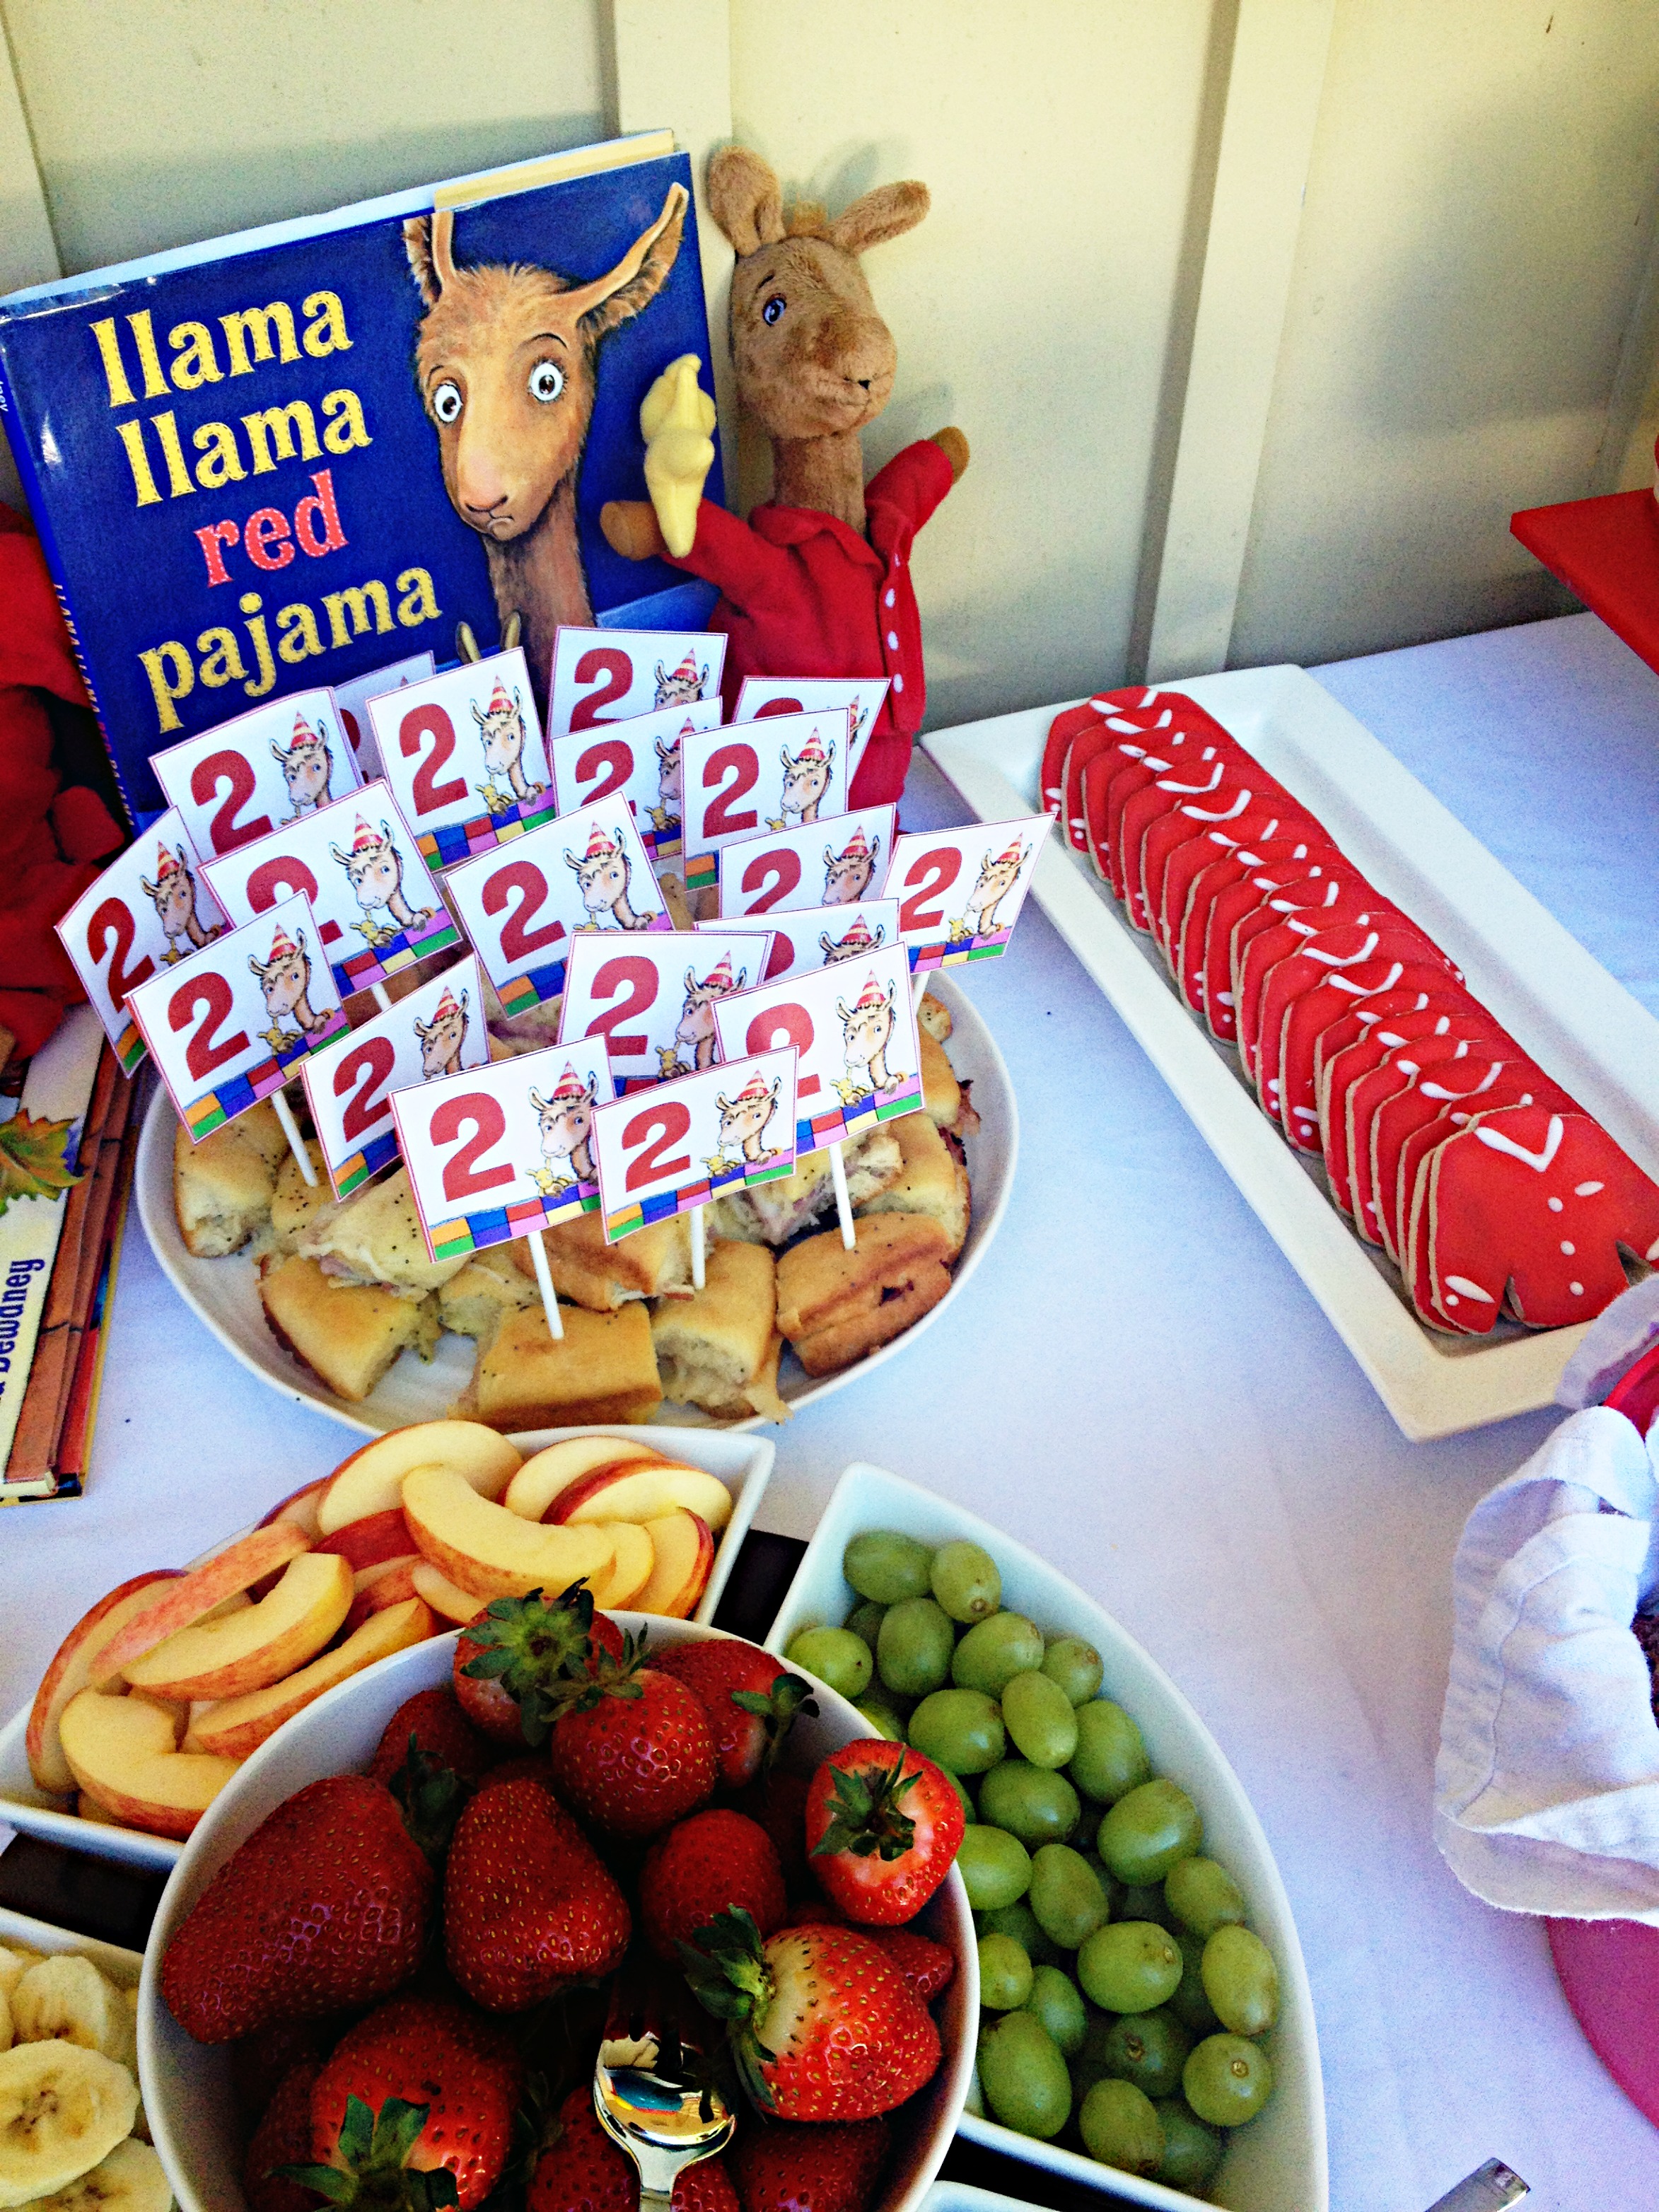 Llama Llama Pajama Party! More Yummy Food